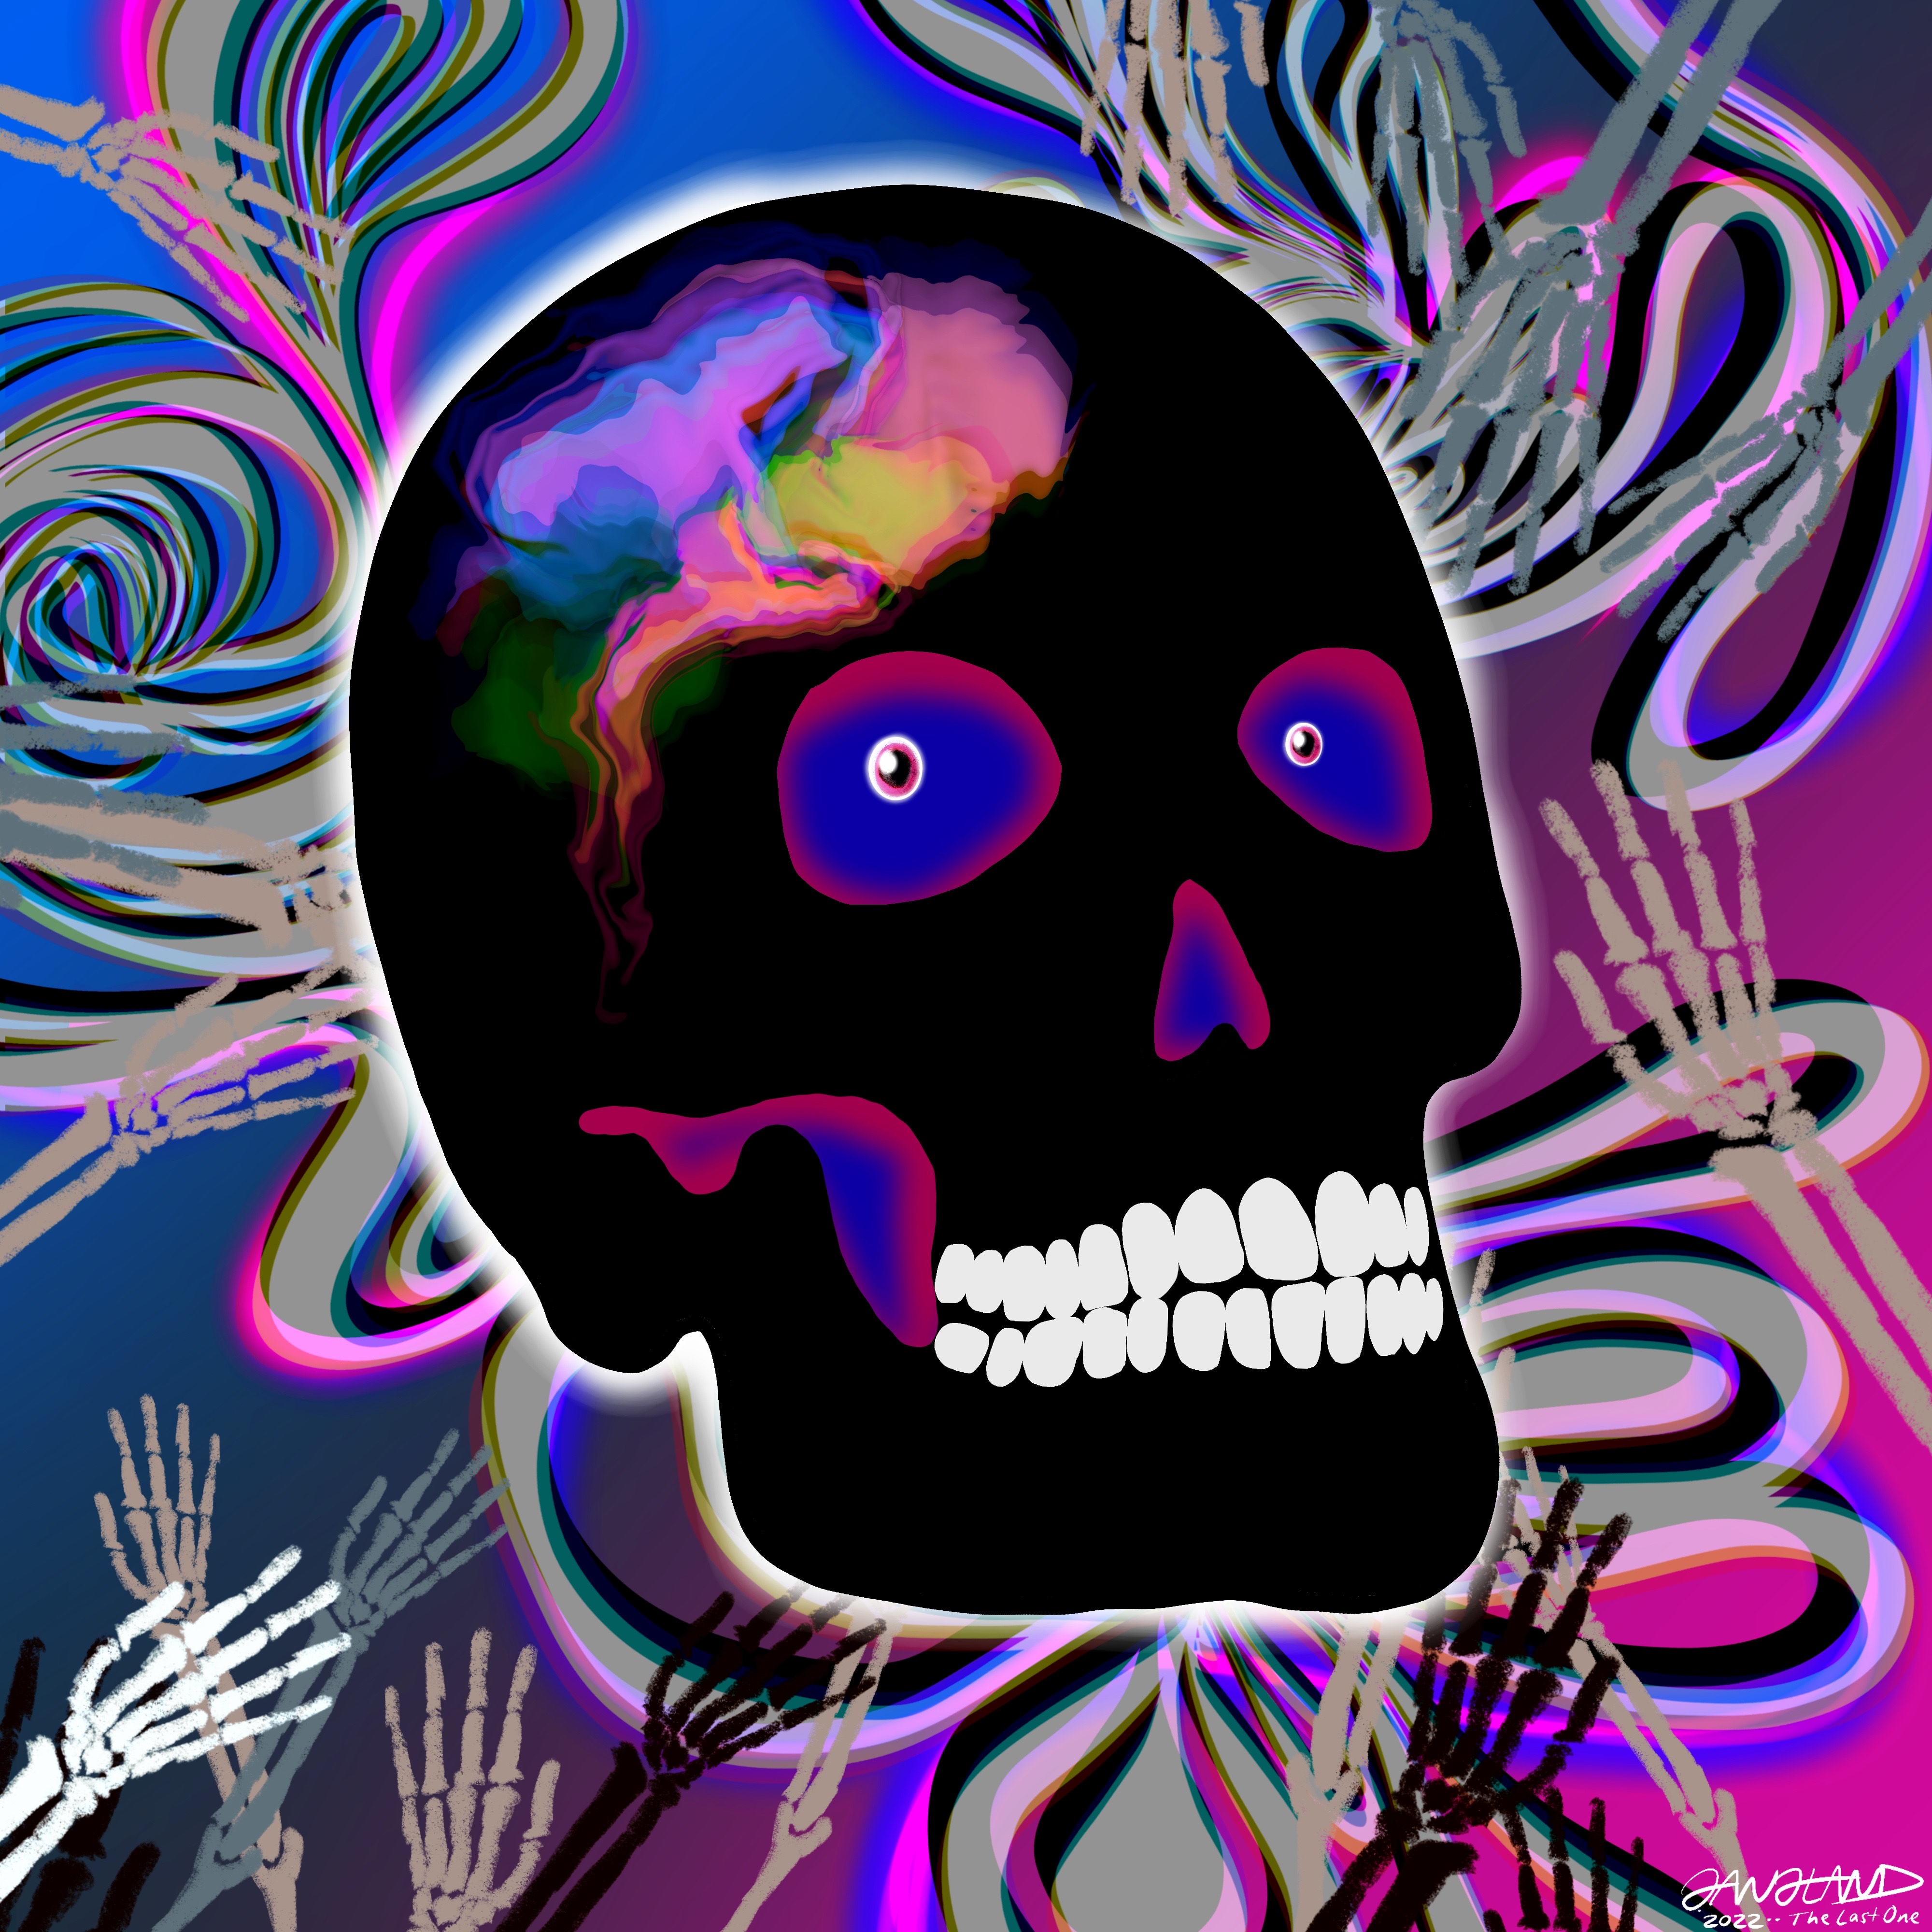 Gangland Skull #360 - "The Last One" - by Eddie Gangland